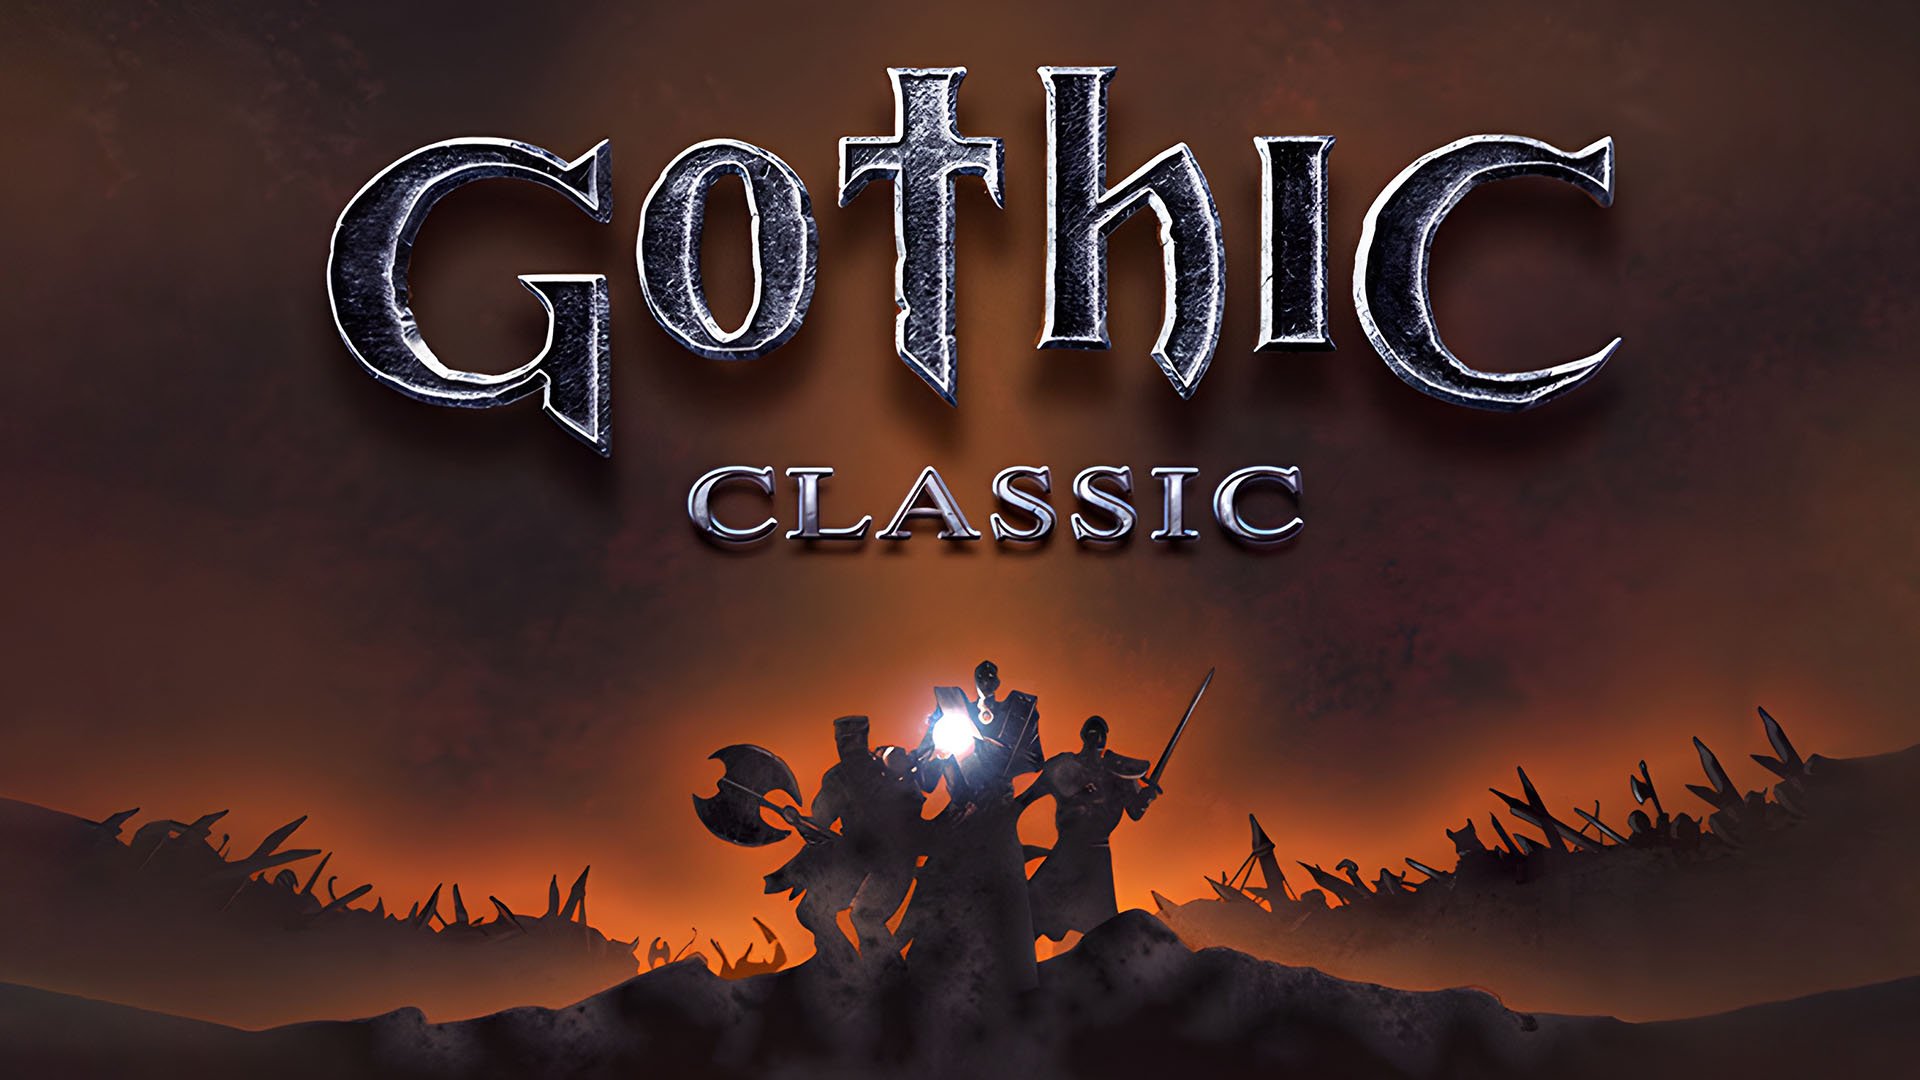 Gothic Classic für Nintendo Switch angekündigt Titel